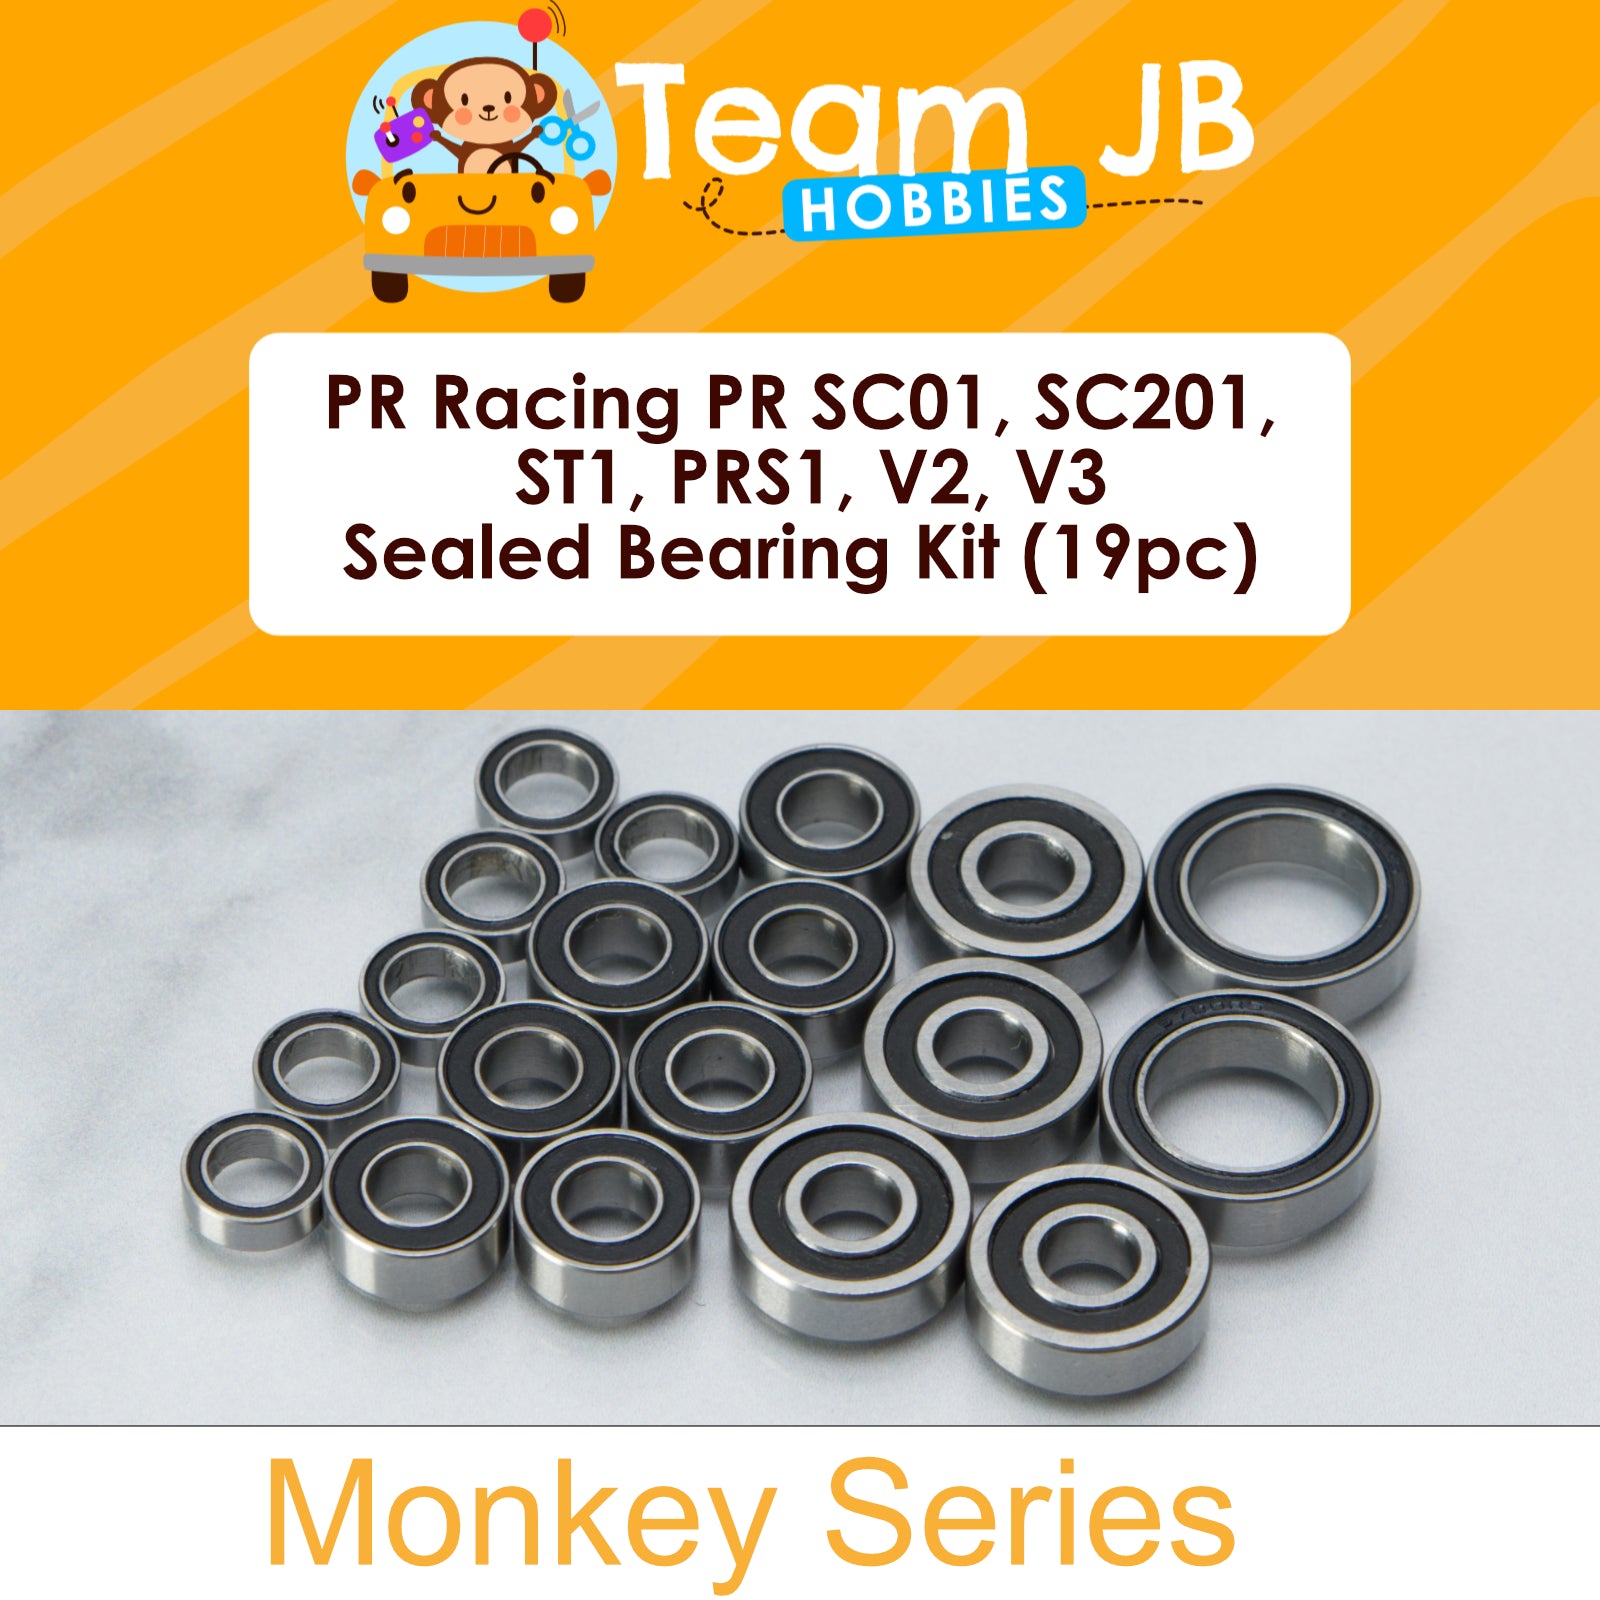 PR Racing PR SC01, PR SC201, PR ST1, PRS1, PRS1 V2, PRS1 V3 - Sealed Bearing Kit